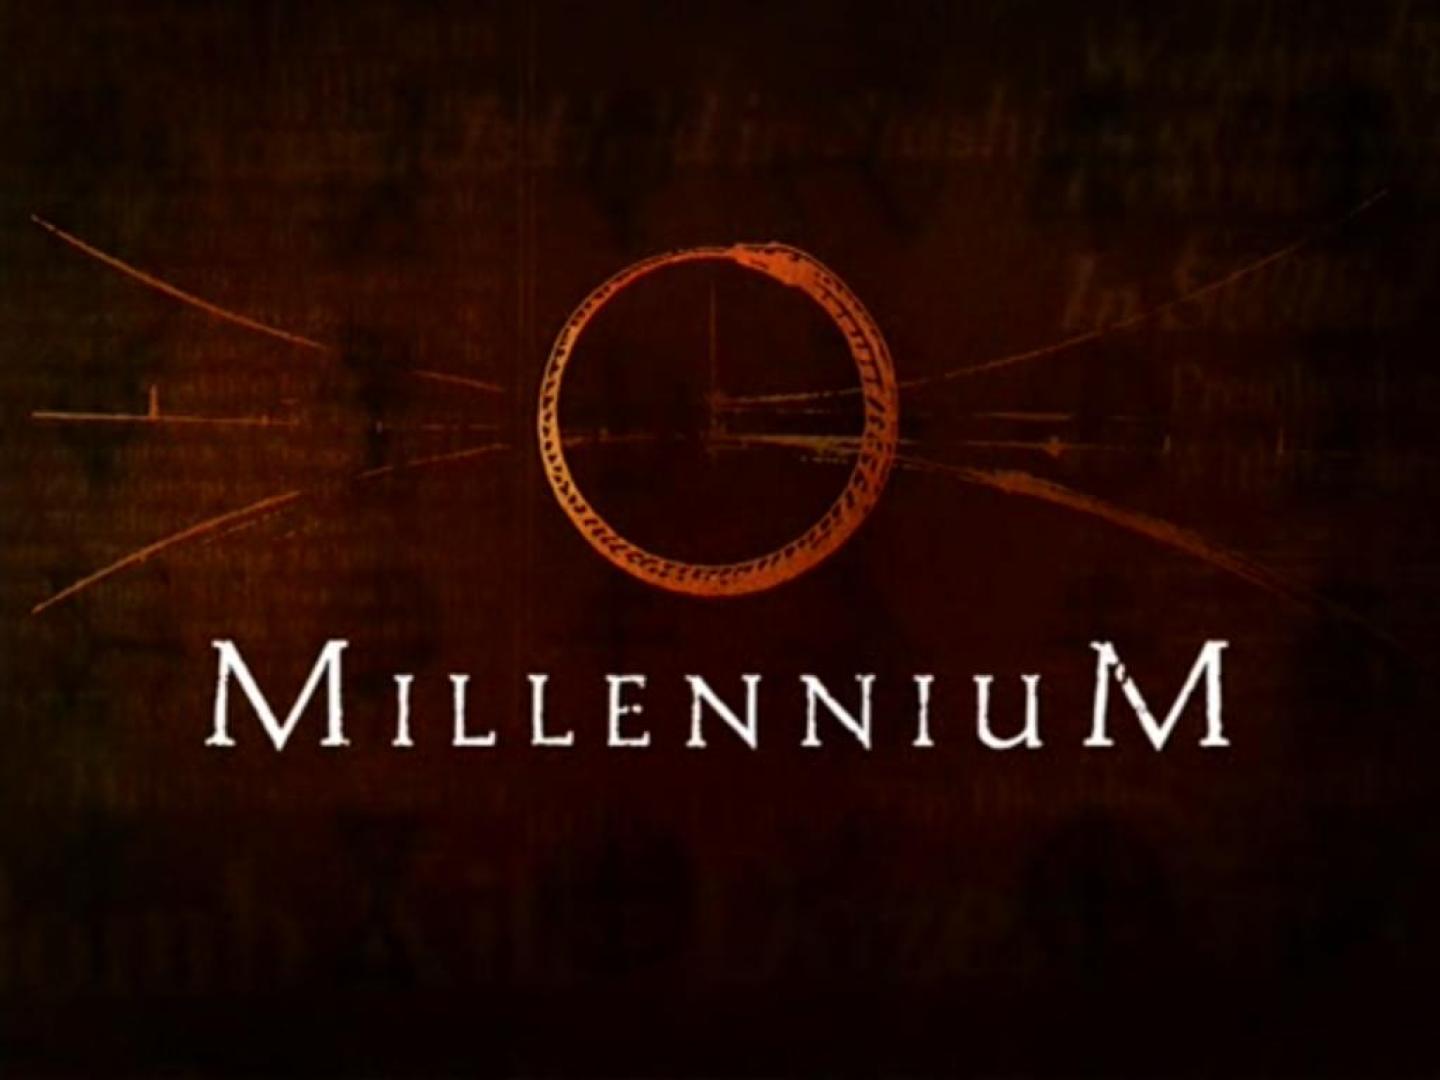 Millennium (1996-1999)